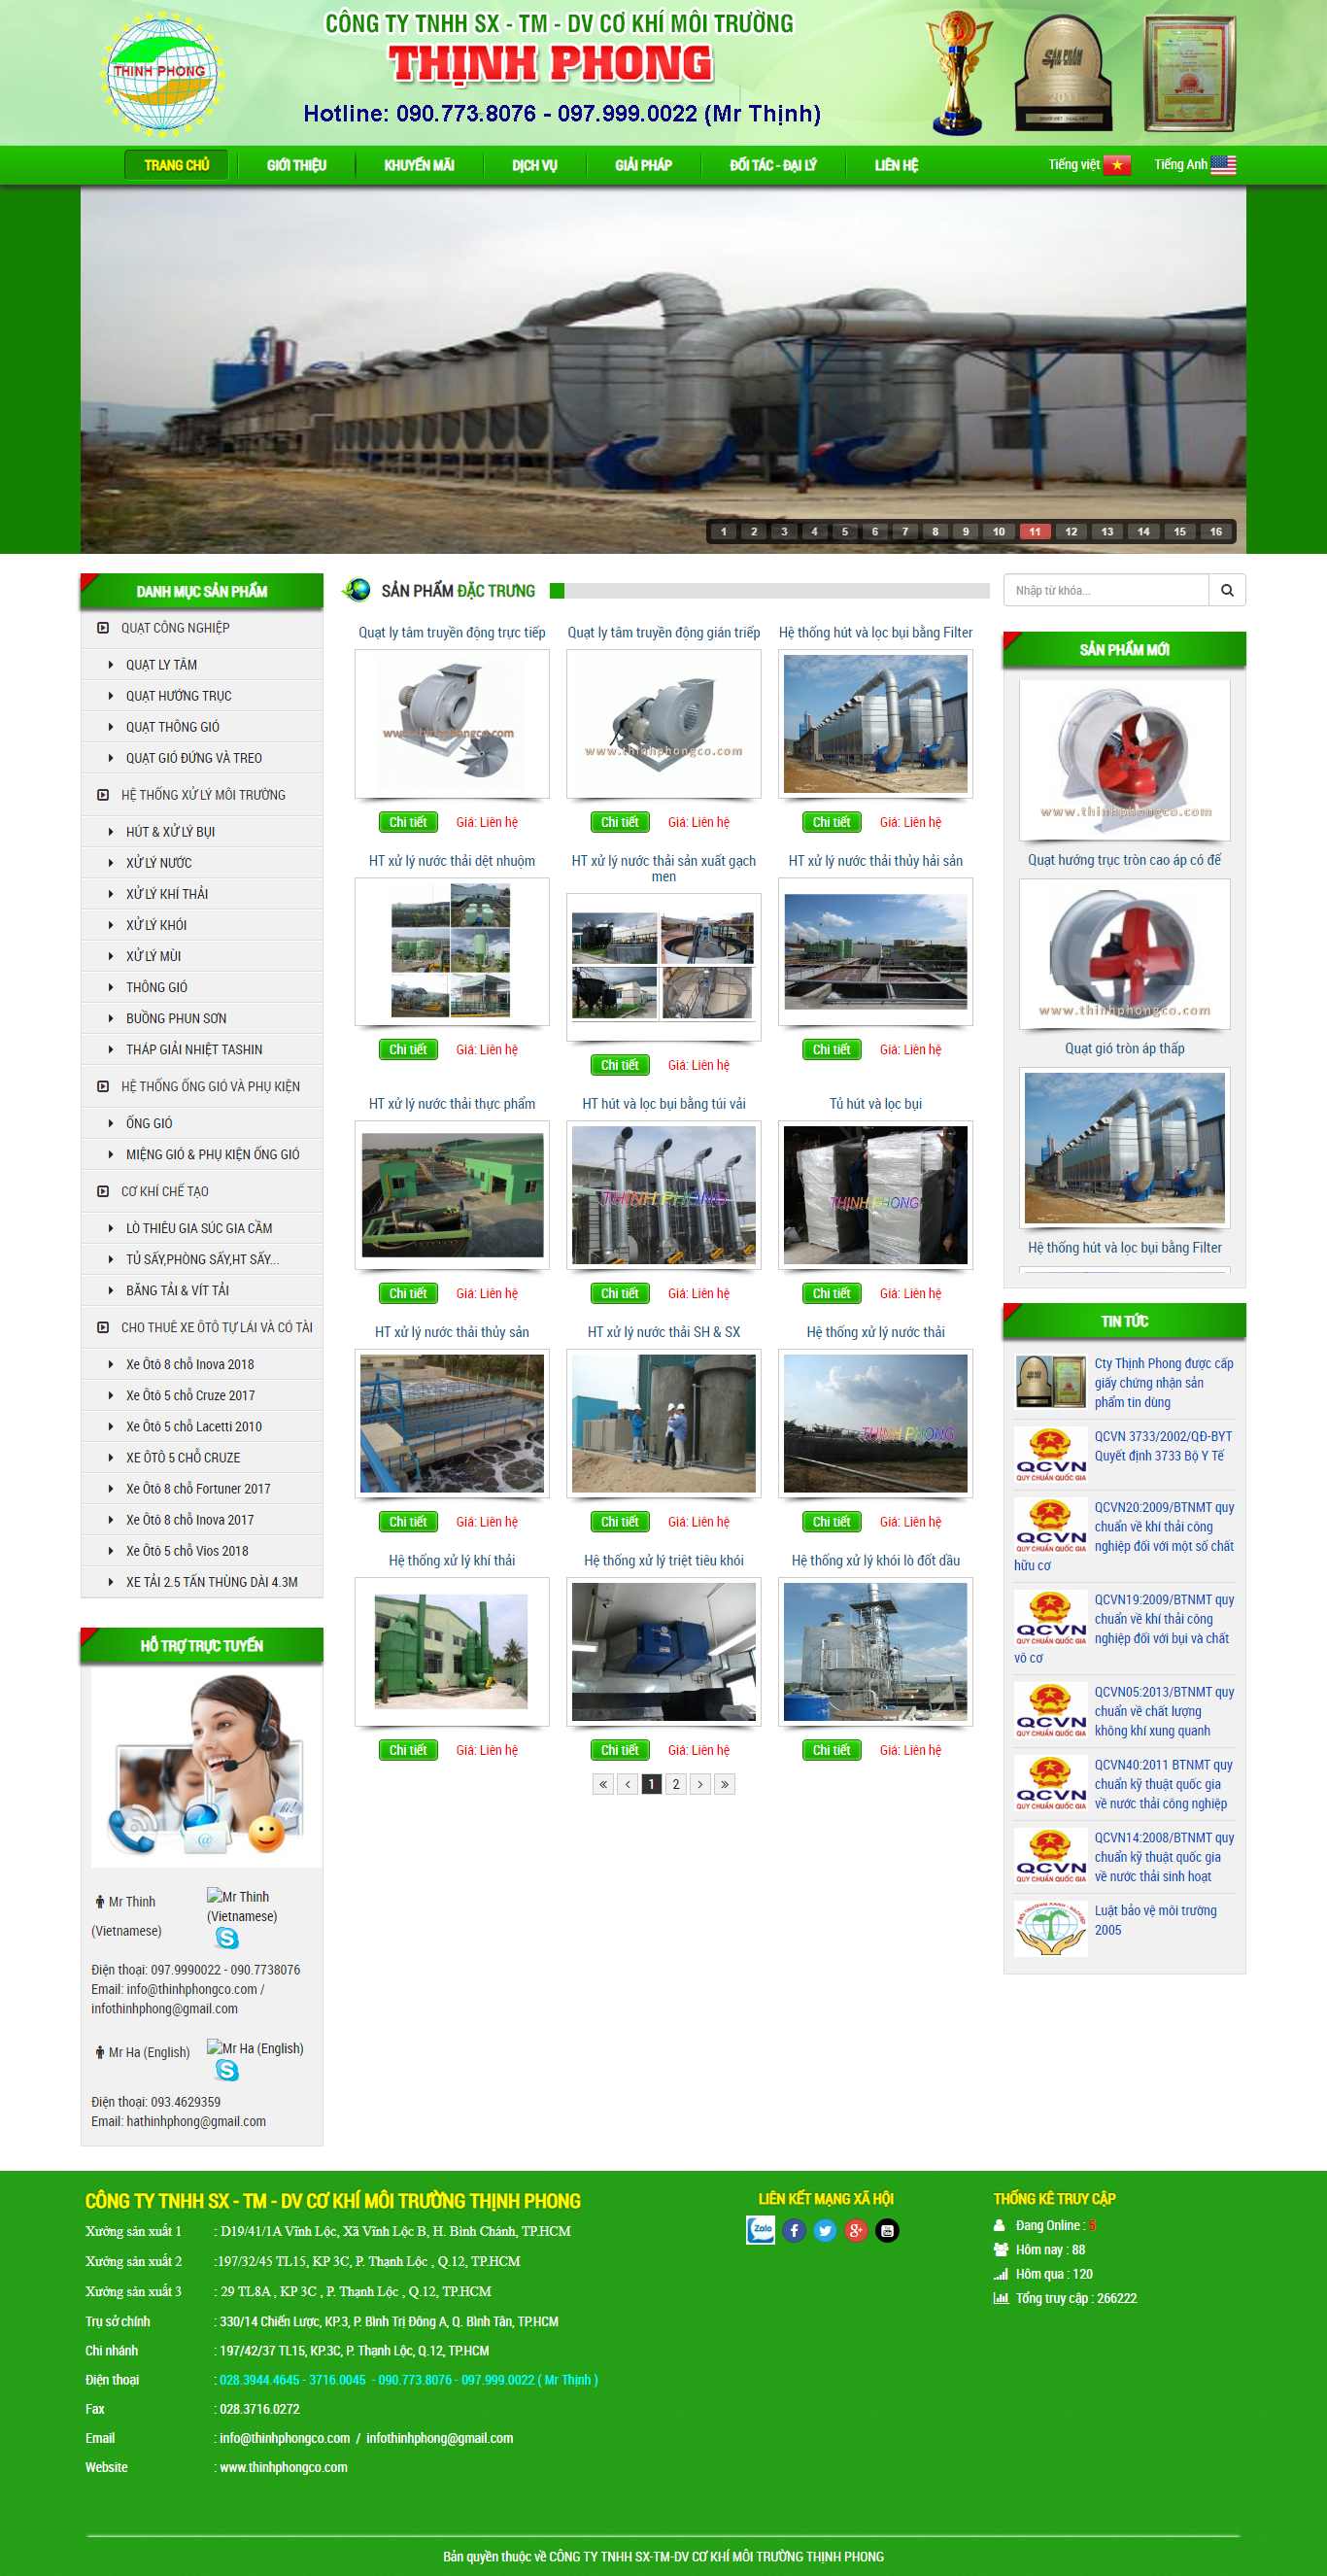 Thiết kế Website công ty môi trường - thinhphongco.com